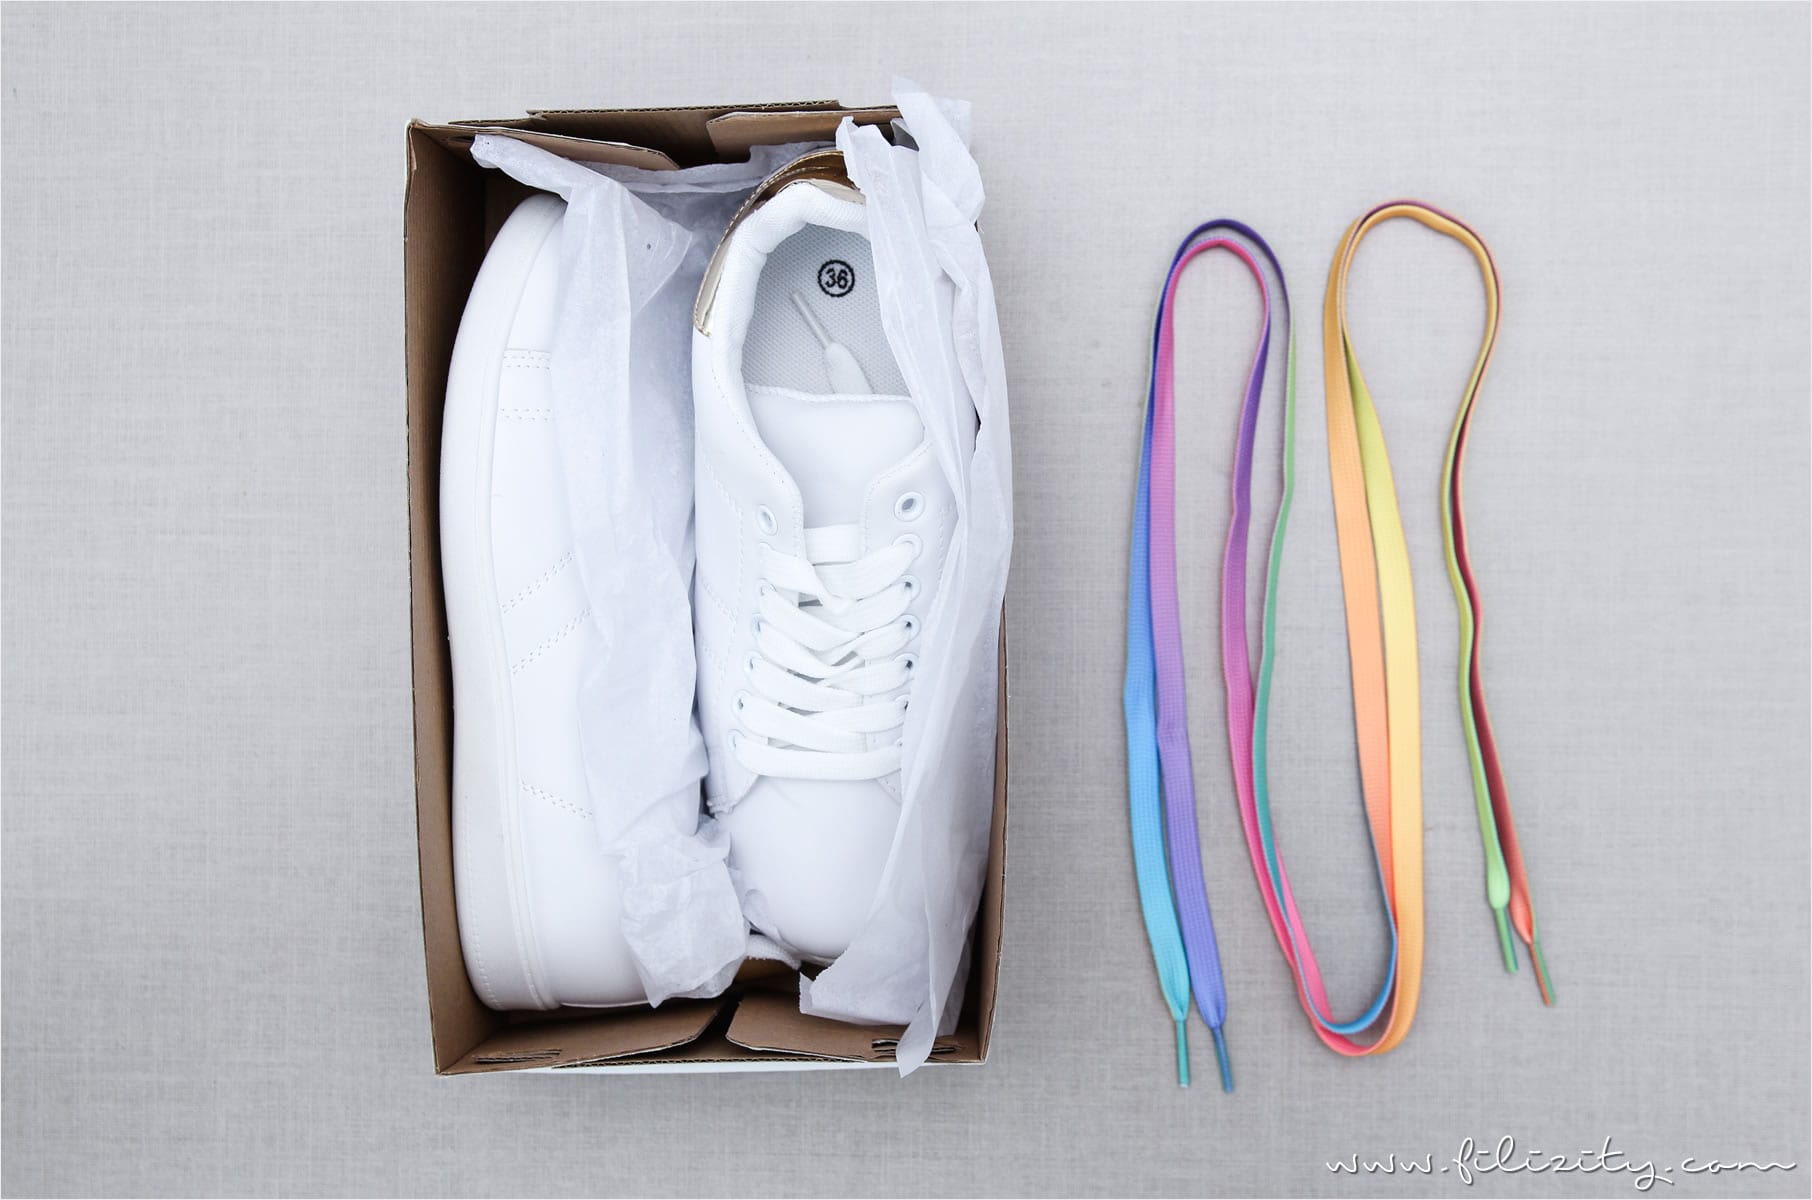 DIY Regenbogen-/Einhorn-Schuhe aus weißen Sneakers